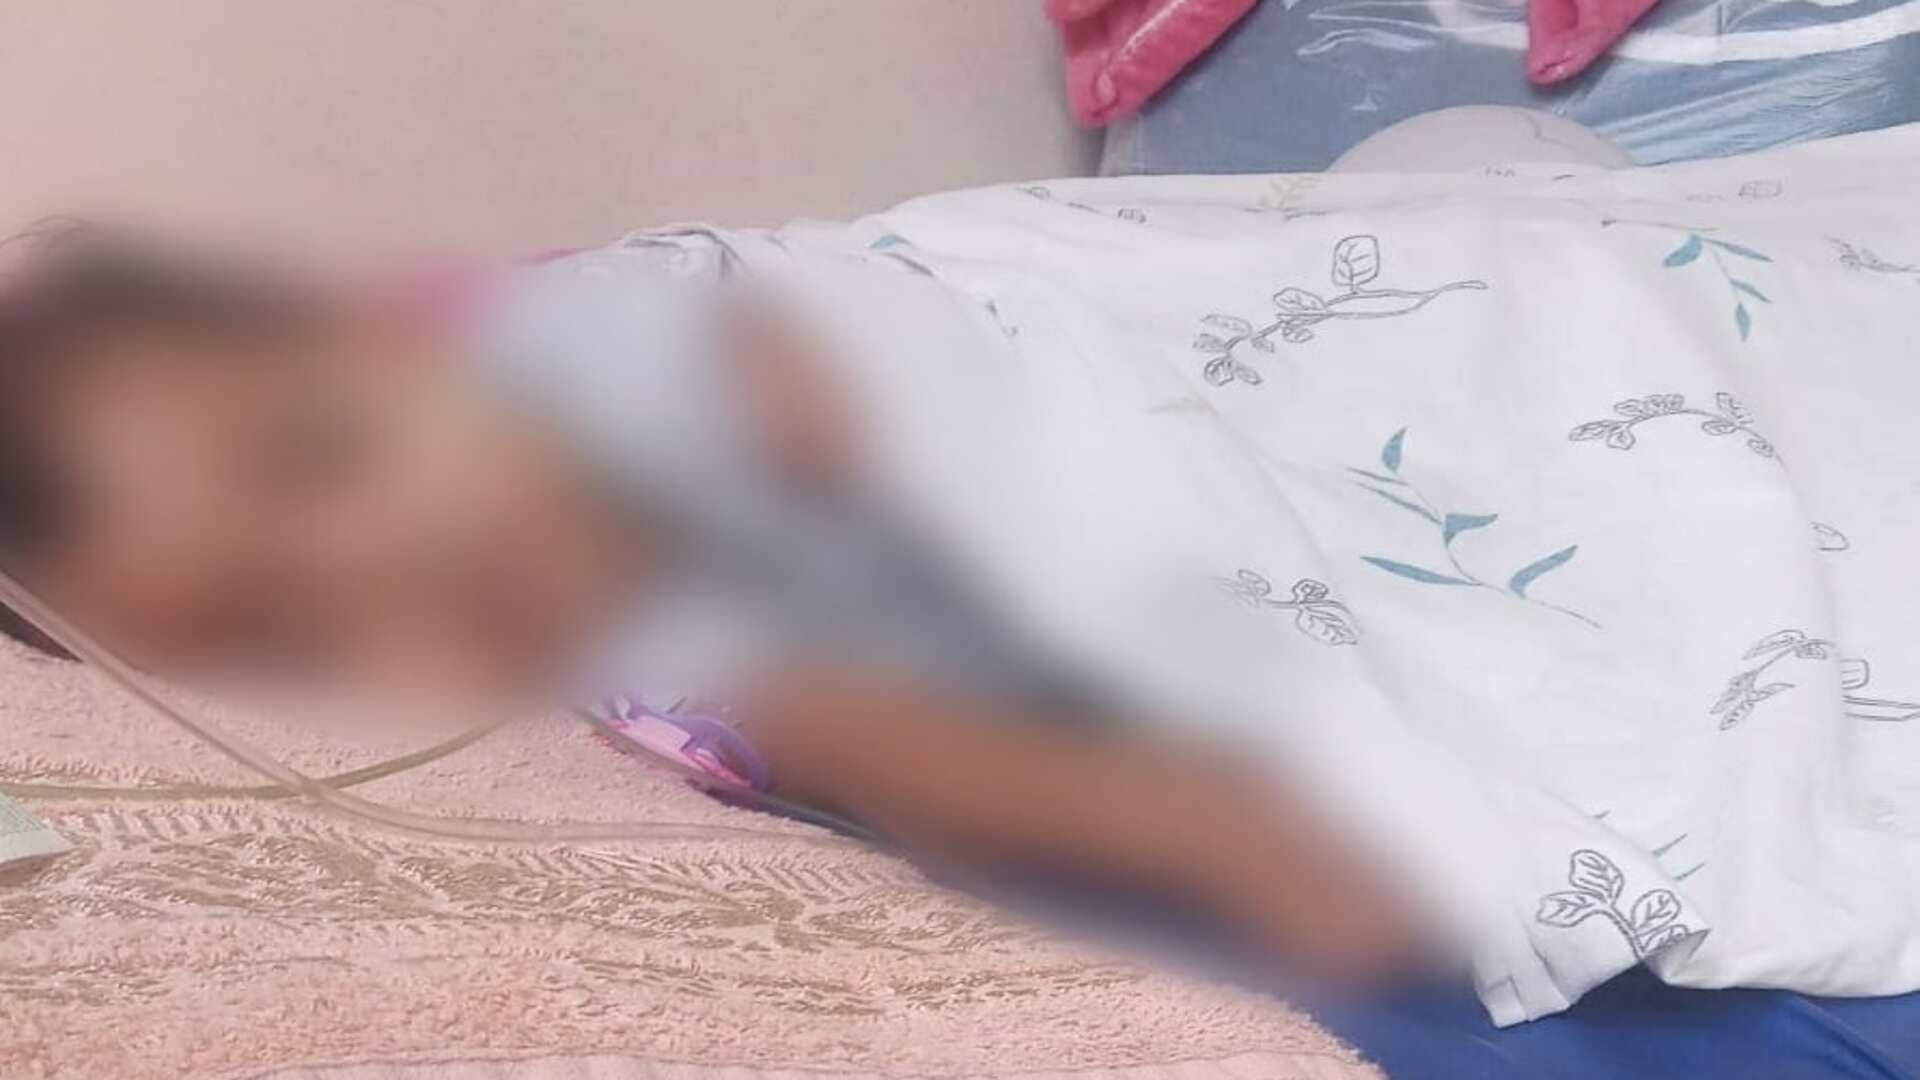 Sem vagas, mãe vive agonia à espera de hospital para filha com pneumonia severa em Campo Grande